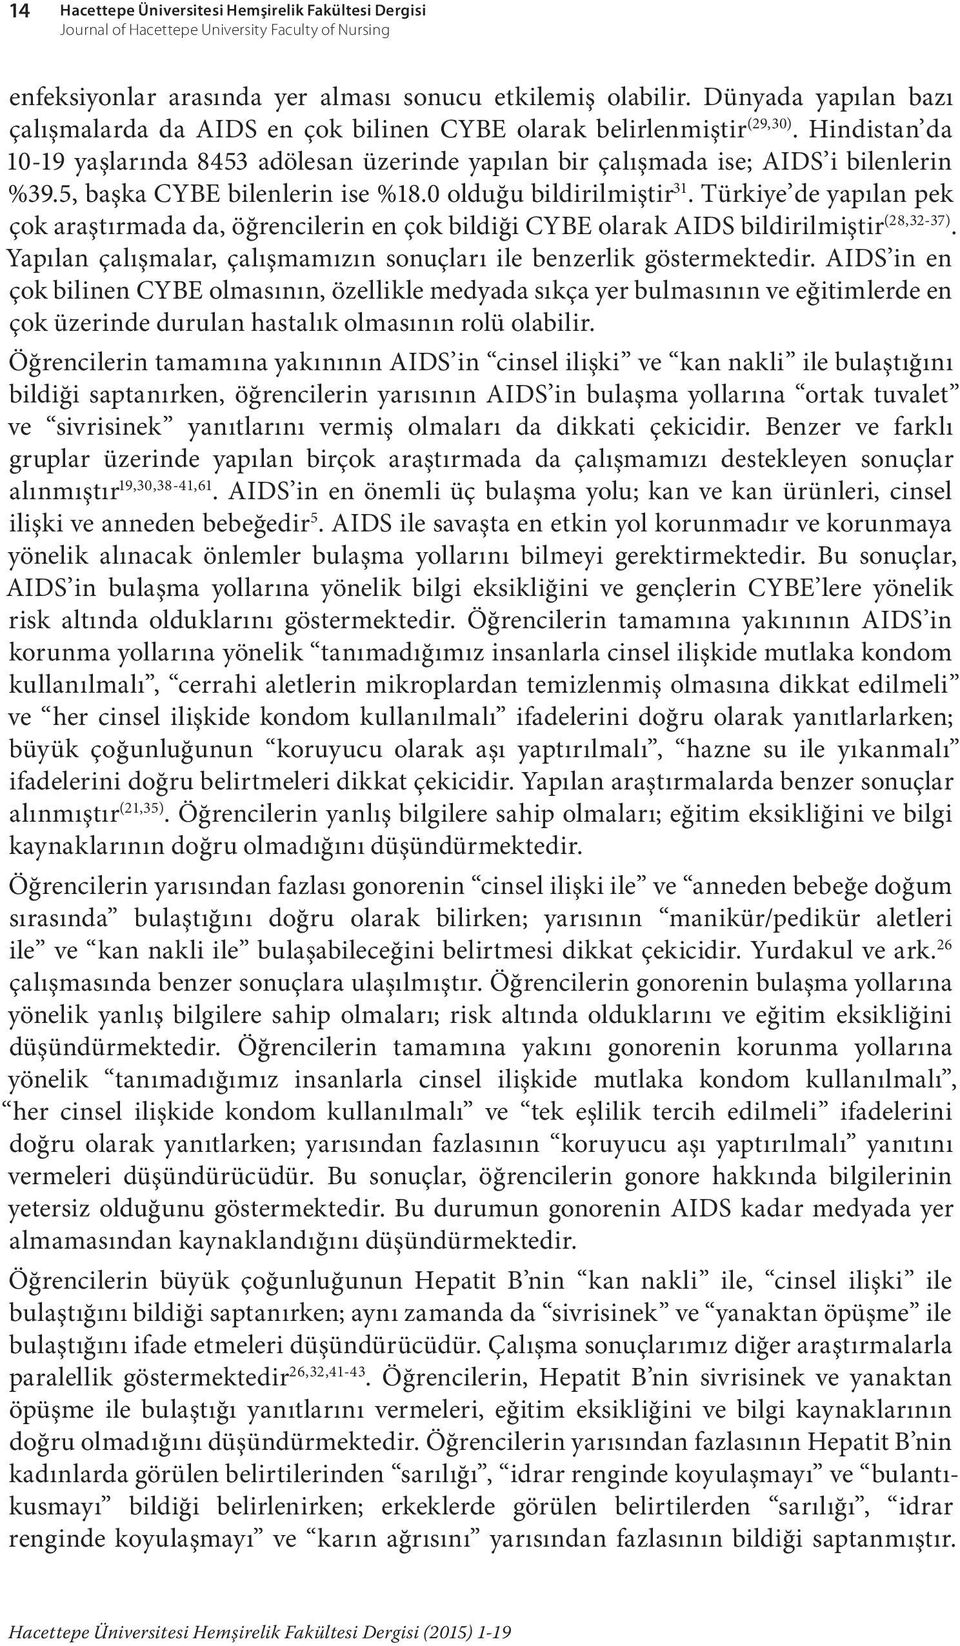 5, başka CYBE bilenlerin ise %18.0 olduğu bildirilmiştir 31. Türkiye de yapılan pek çok araştırmada da, öğrencilerin en çok bildiği CYBE olarak AIDS bildirilmiştir (28,32-37).